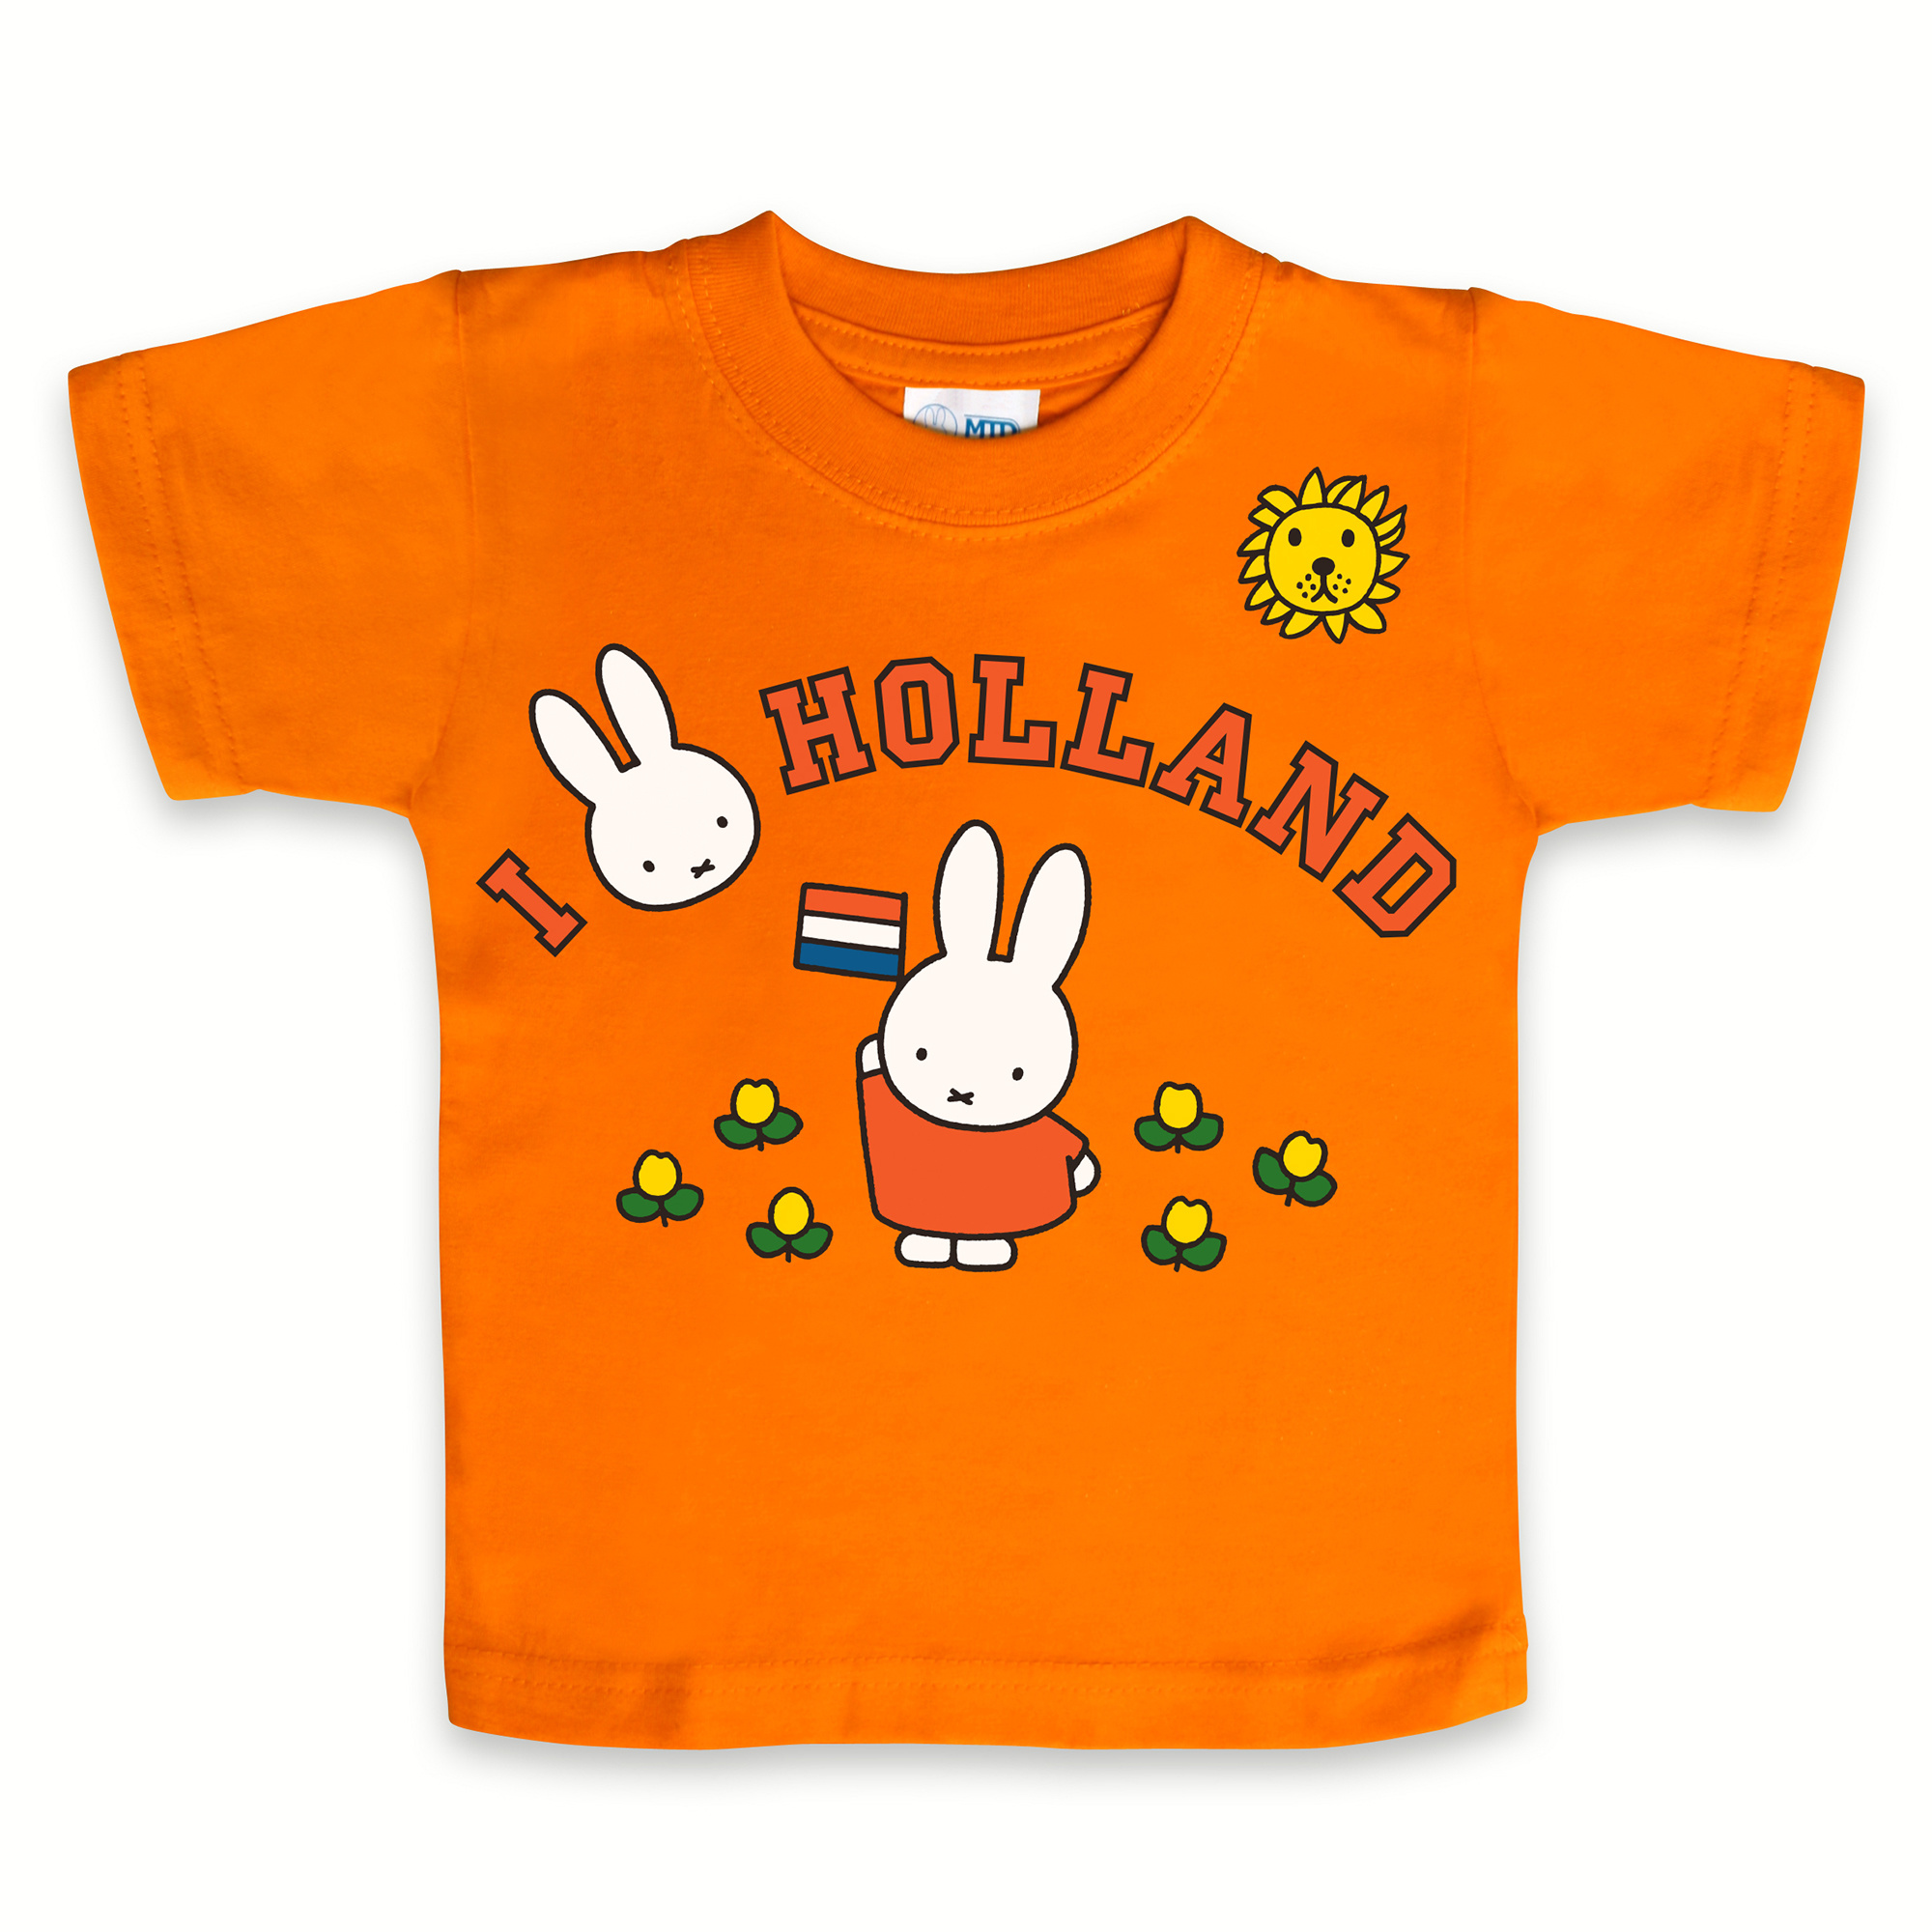 Onleesbaar Walter Cunningham Gering t-shirt nijntje love Holland oranje maat 92 - De winkel van nijntje